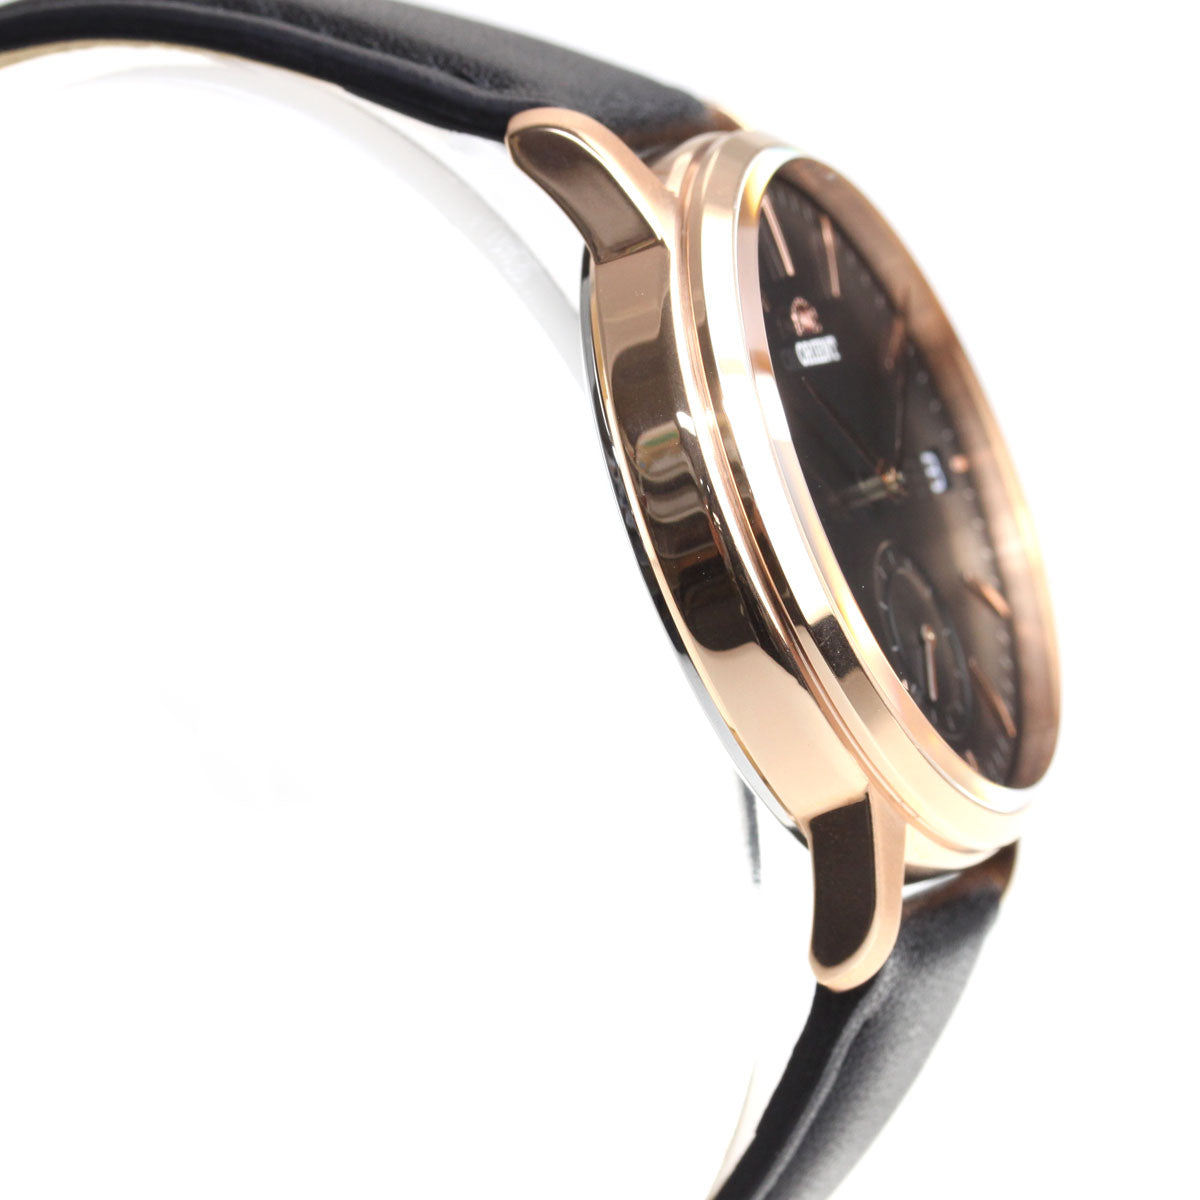 オリエント ORIENT 腕時計 メンズ コンテンポラリー CONTEMPORARY スモールセコンド RN-SP0003B